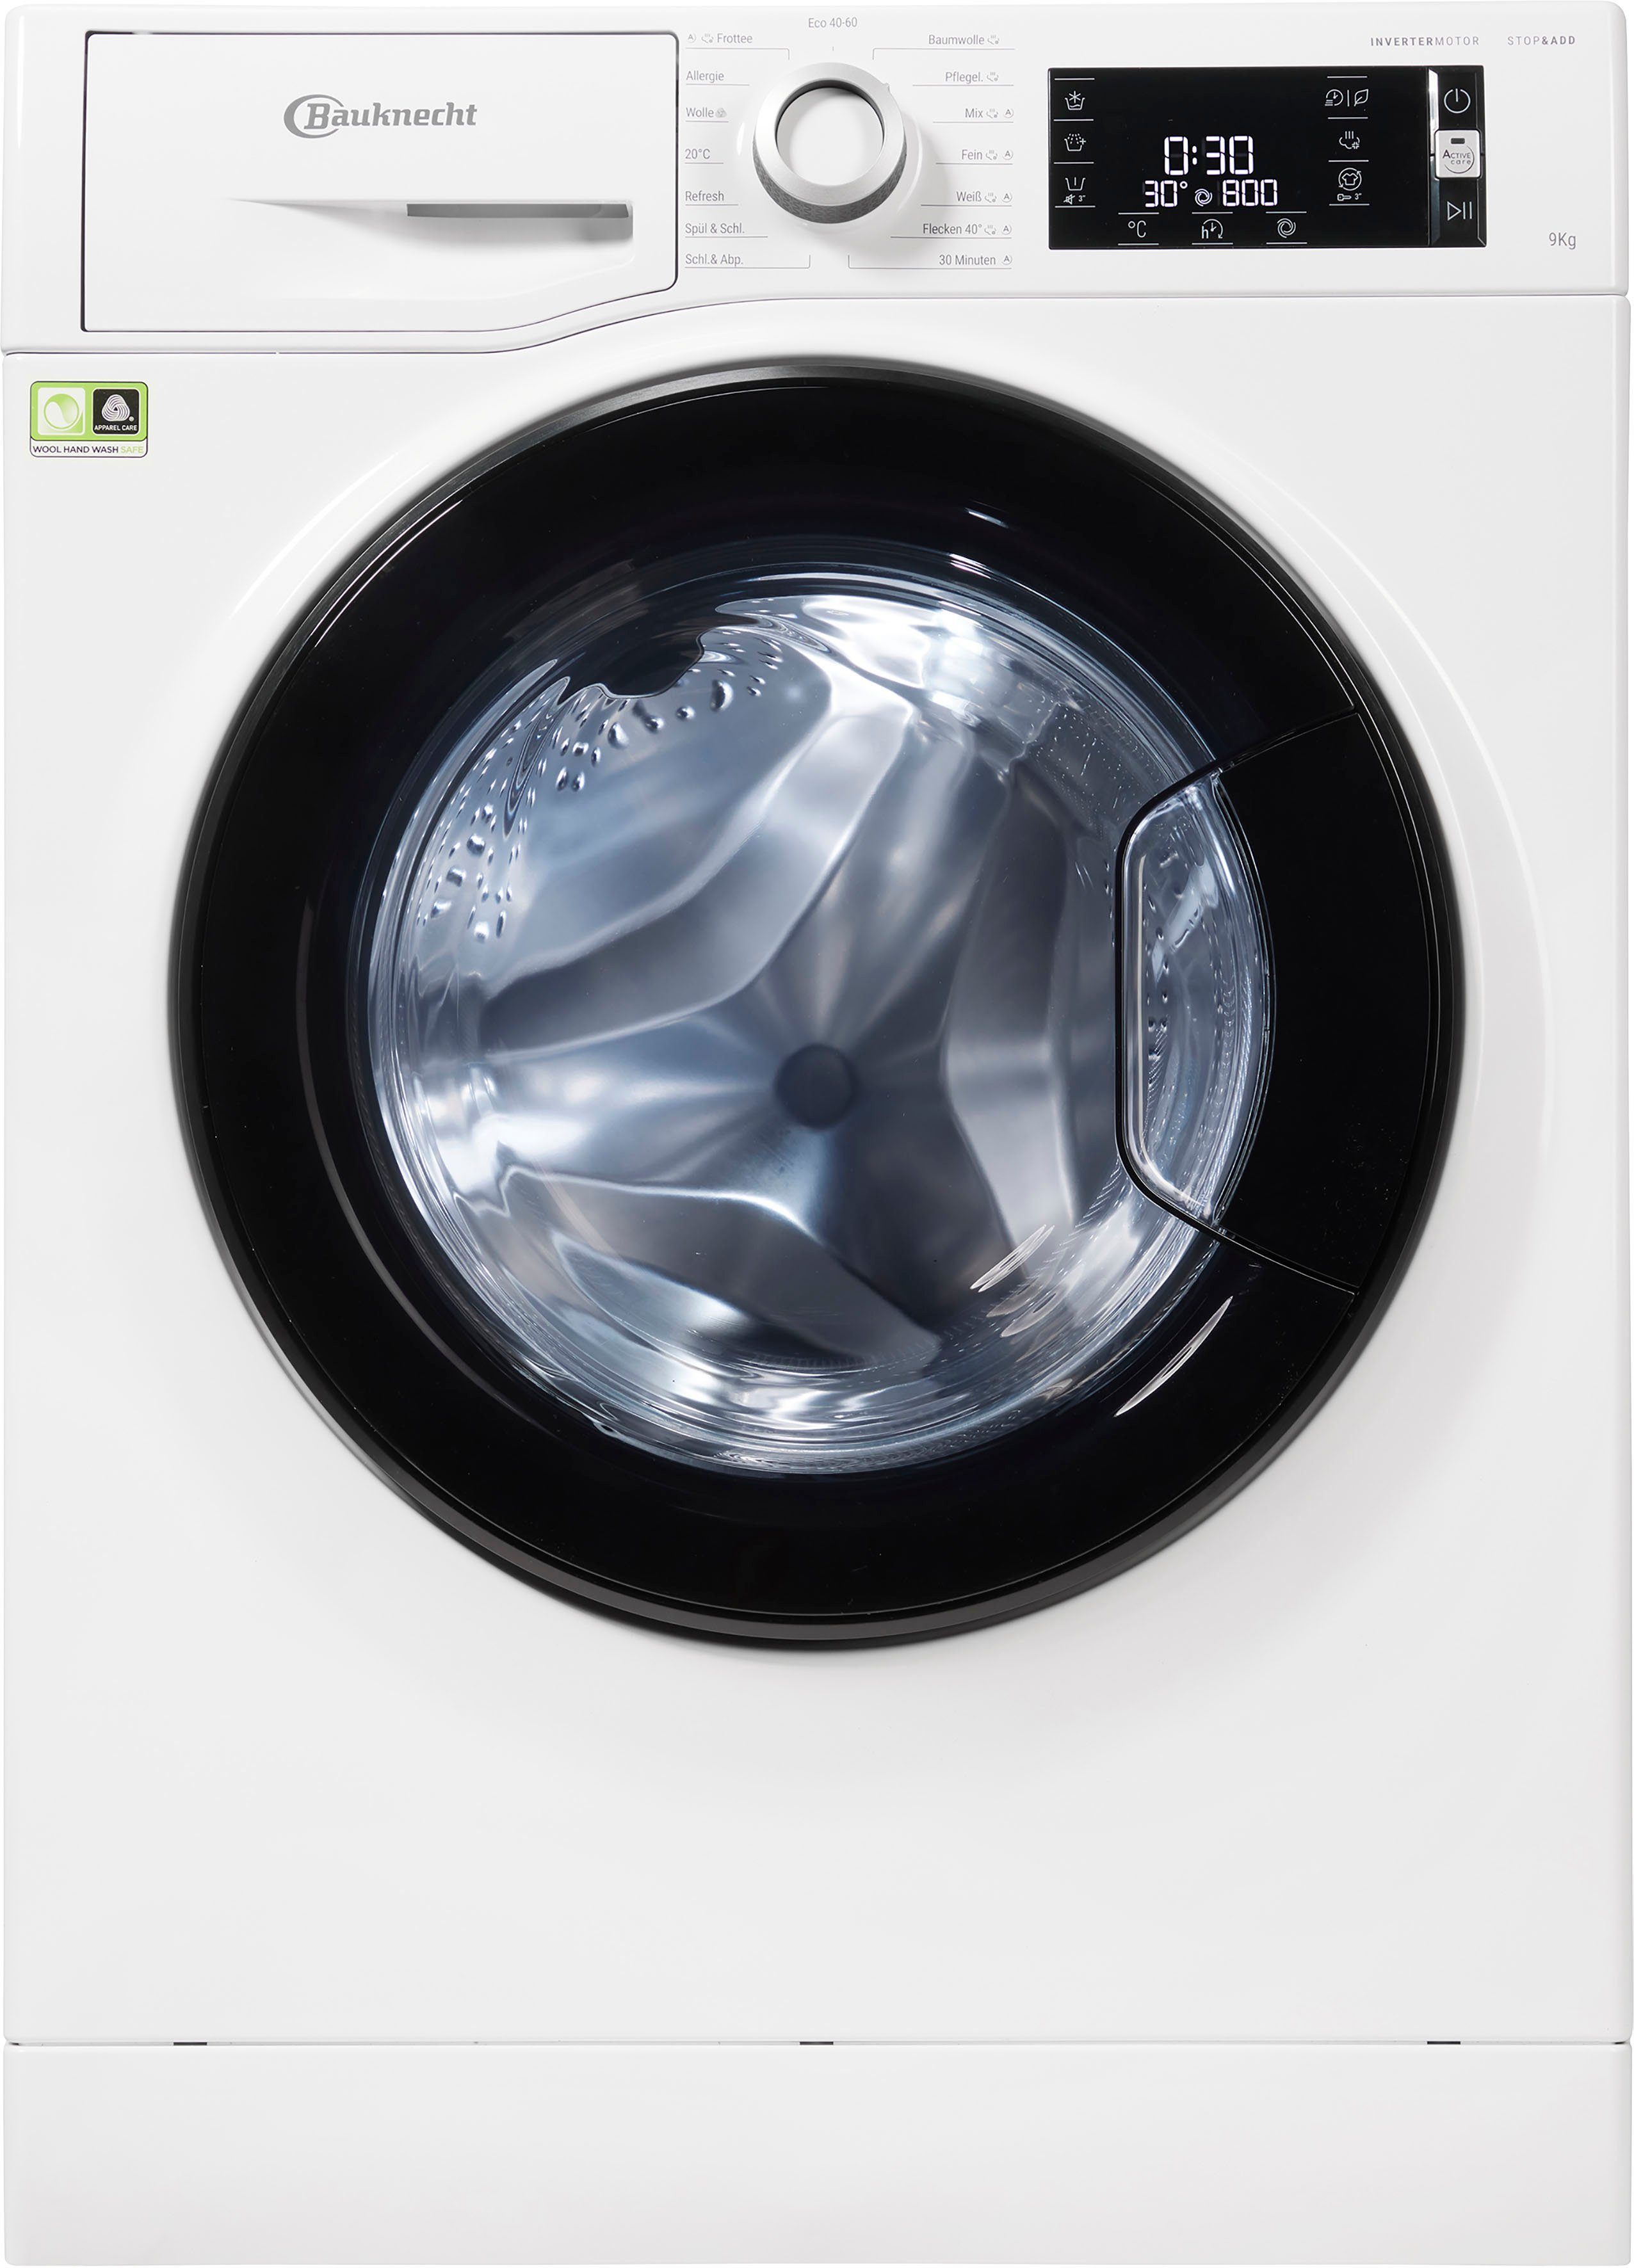 BAUKNECHT Waschmaschine WM Elite 1400 9 9A, kg, U/min